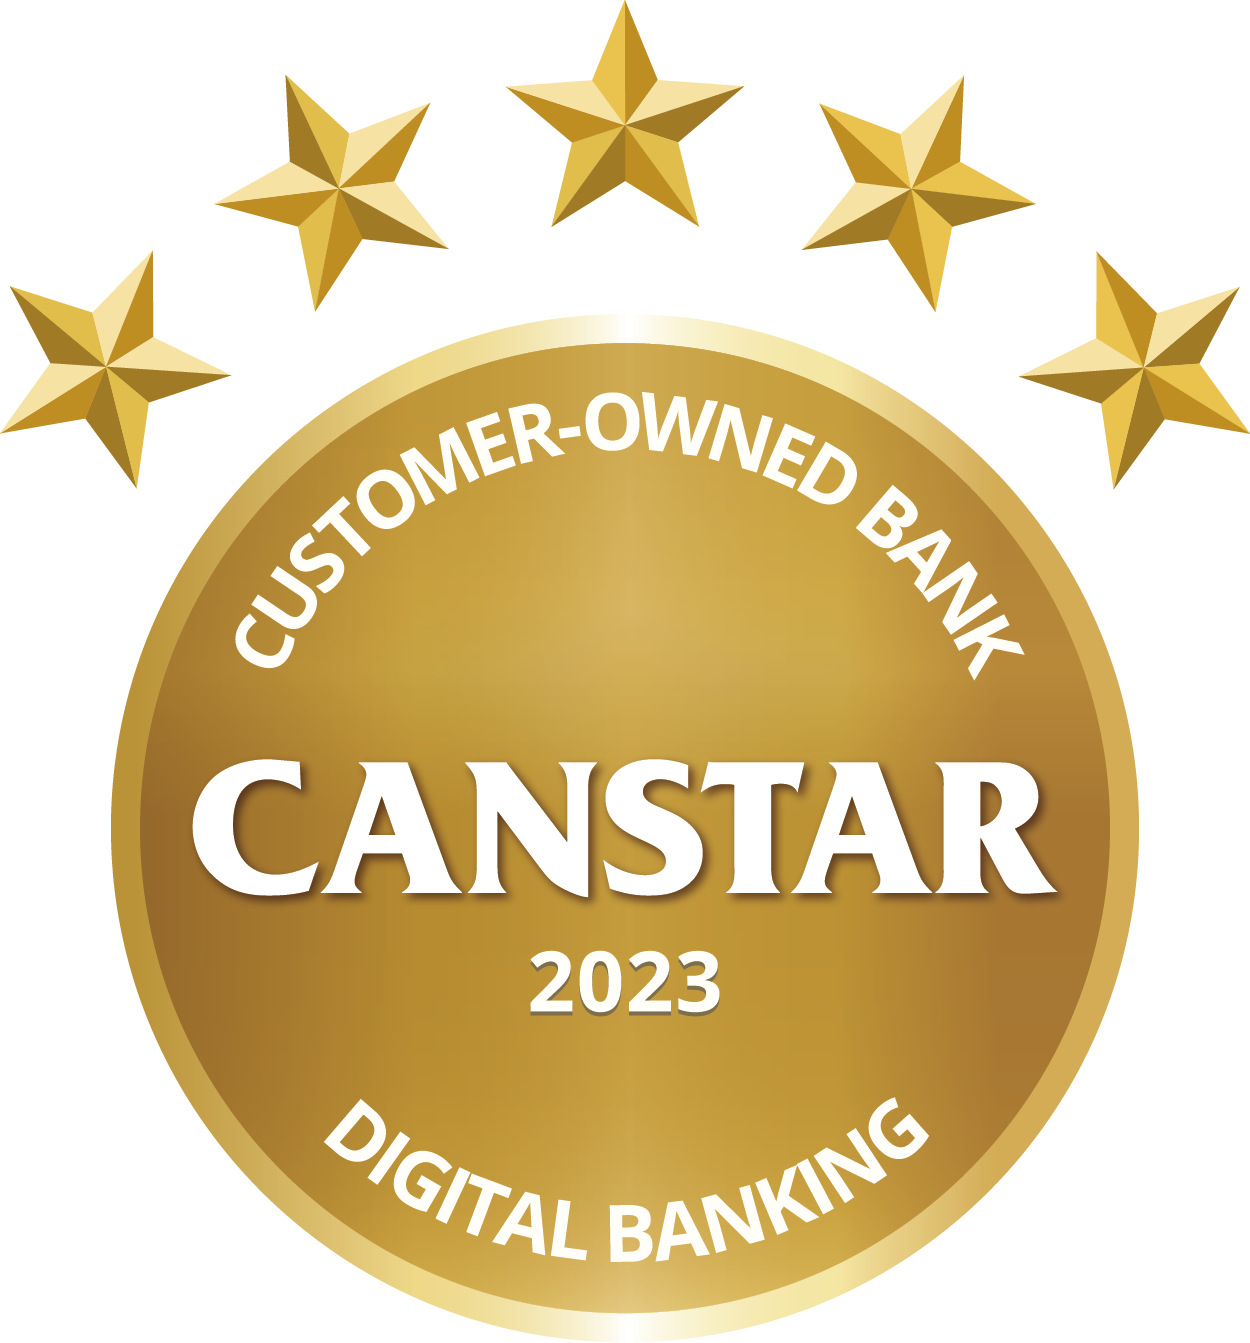 Canstar 23